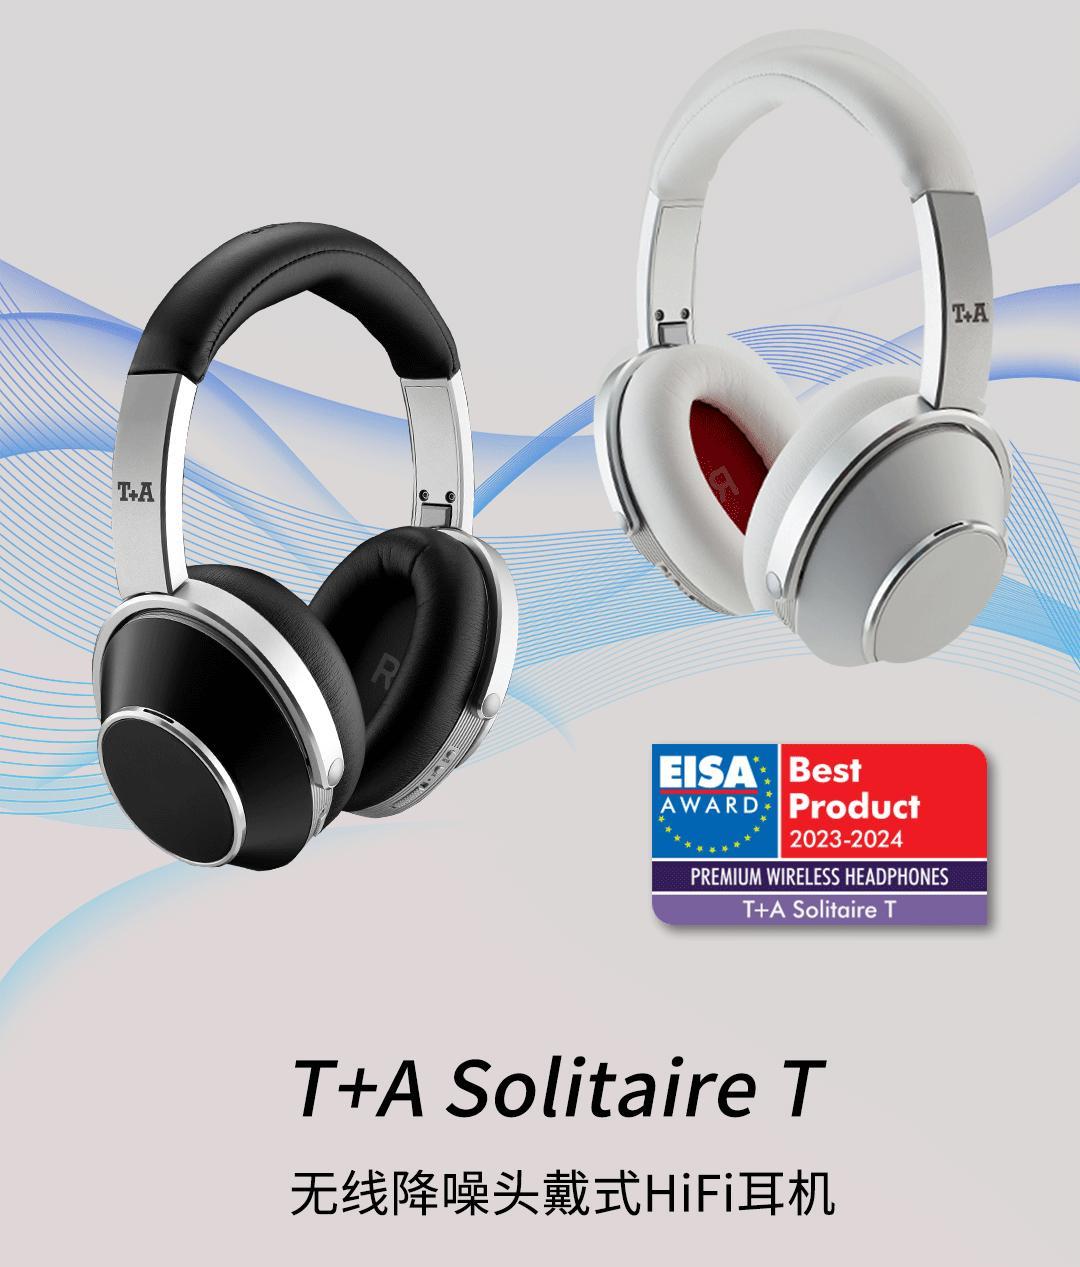 德国T+A 聽佳音 Solitaire T 无线降噪头戴式HiFi耳机 荣获：EISA 2023年最佳无线耳机大奖